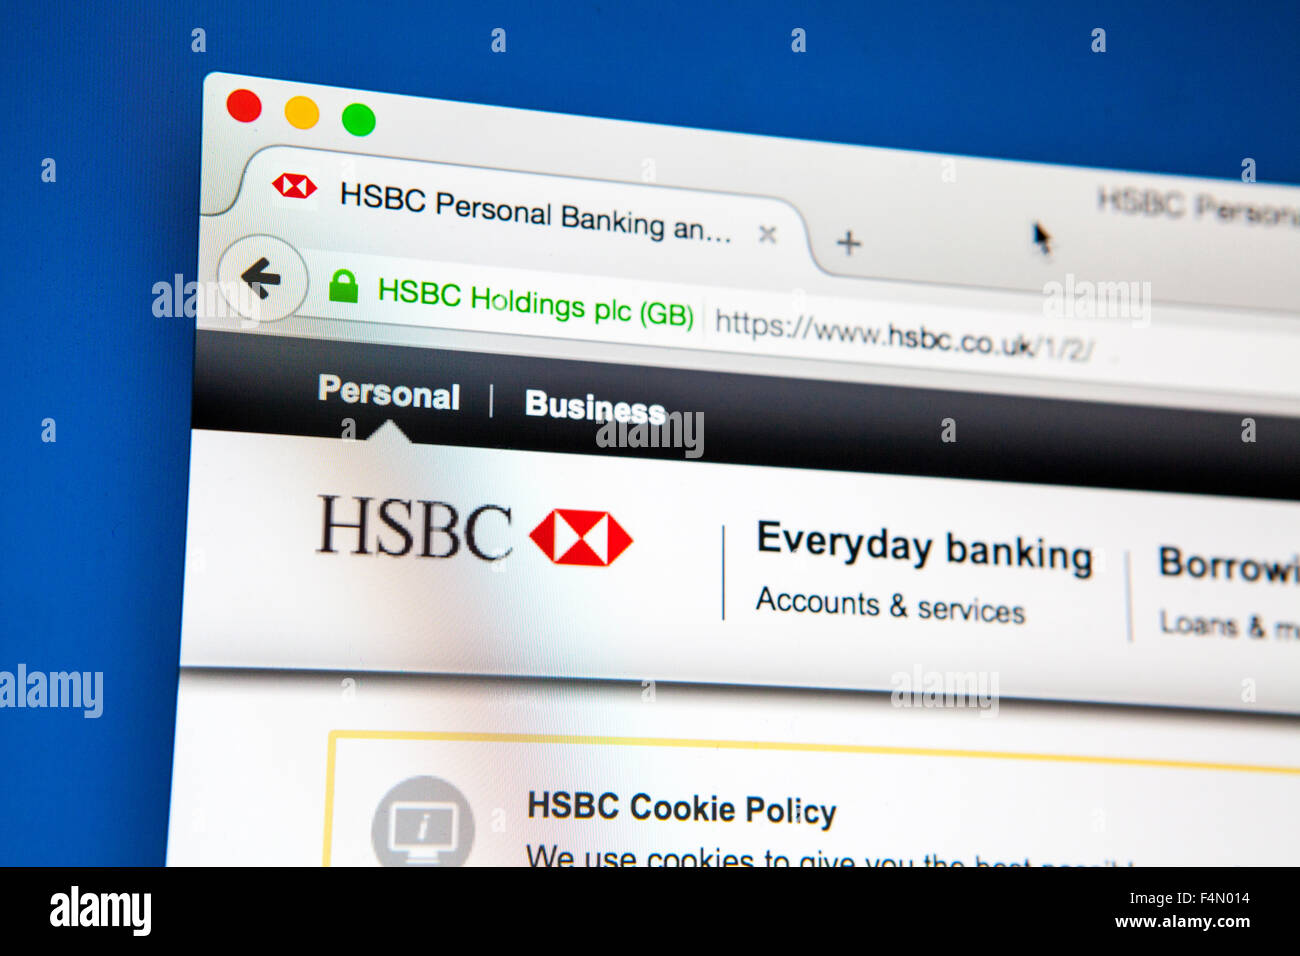 Londres, Reino Unido - El 20 de junio de 2015: La página de inicio del sitio web oficial de HSBC - el mundo del tercer mayor banco por activos, el 20 de junio Foto de stock